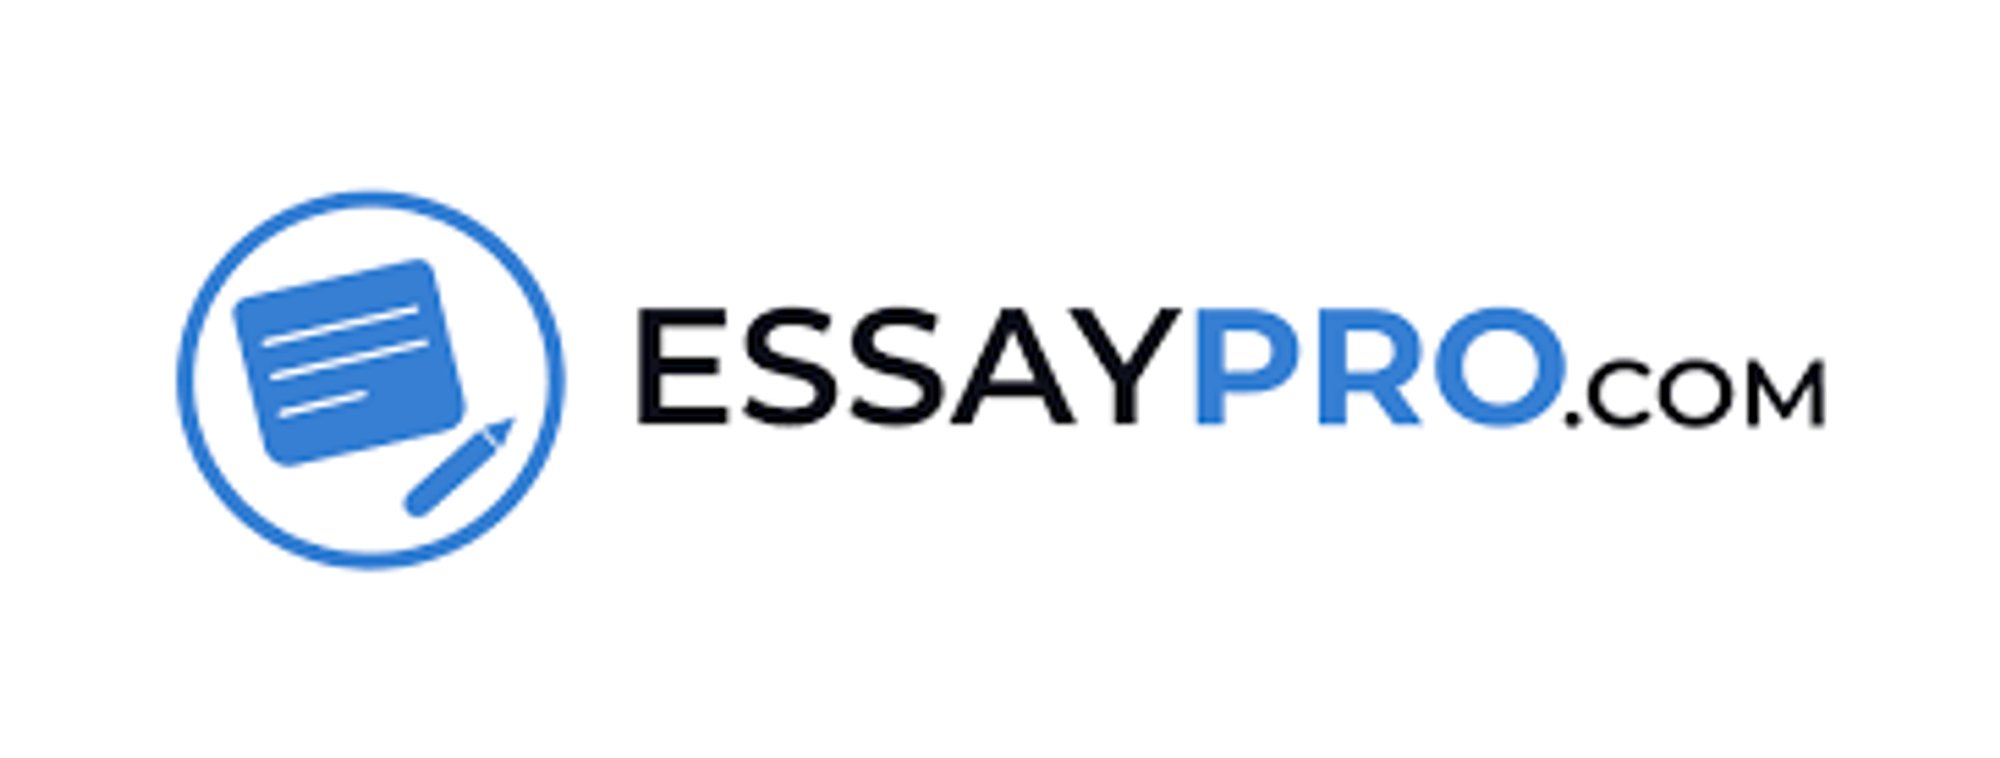 EssayPro.com Logo